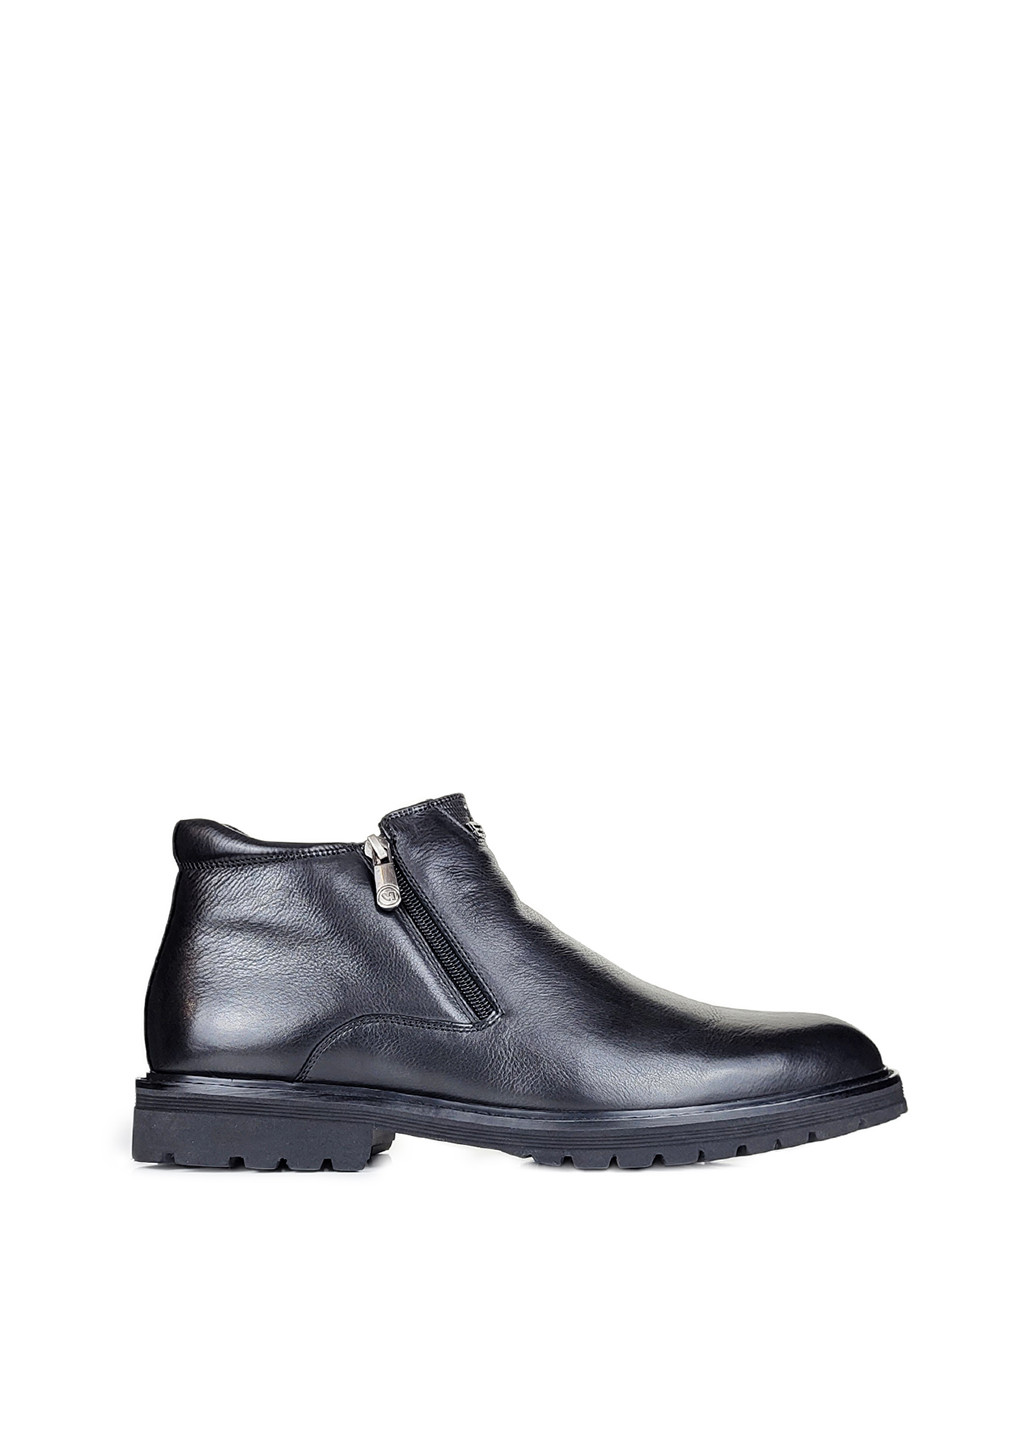 Черные зимние кожаные мужские ботинки классические высокие с мехом,,dh651m-1-1 чорн,39 Cosottinni